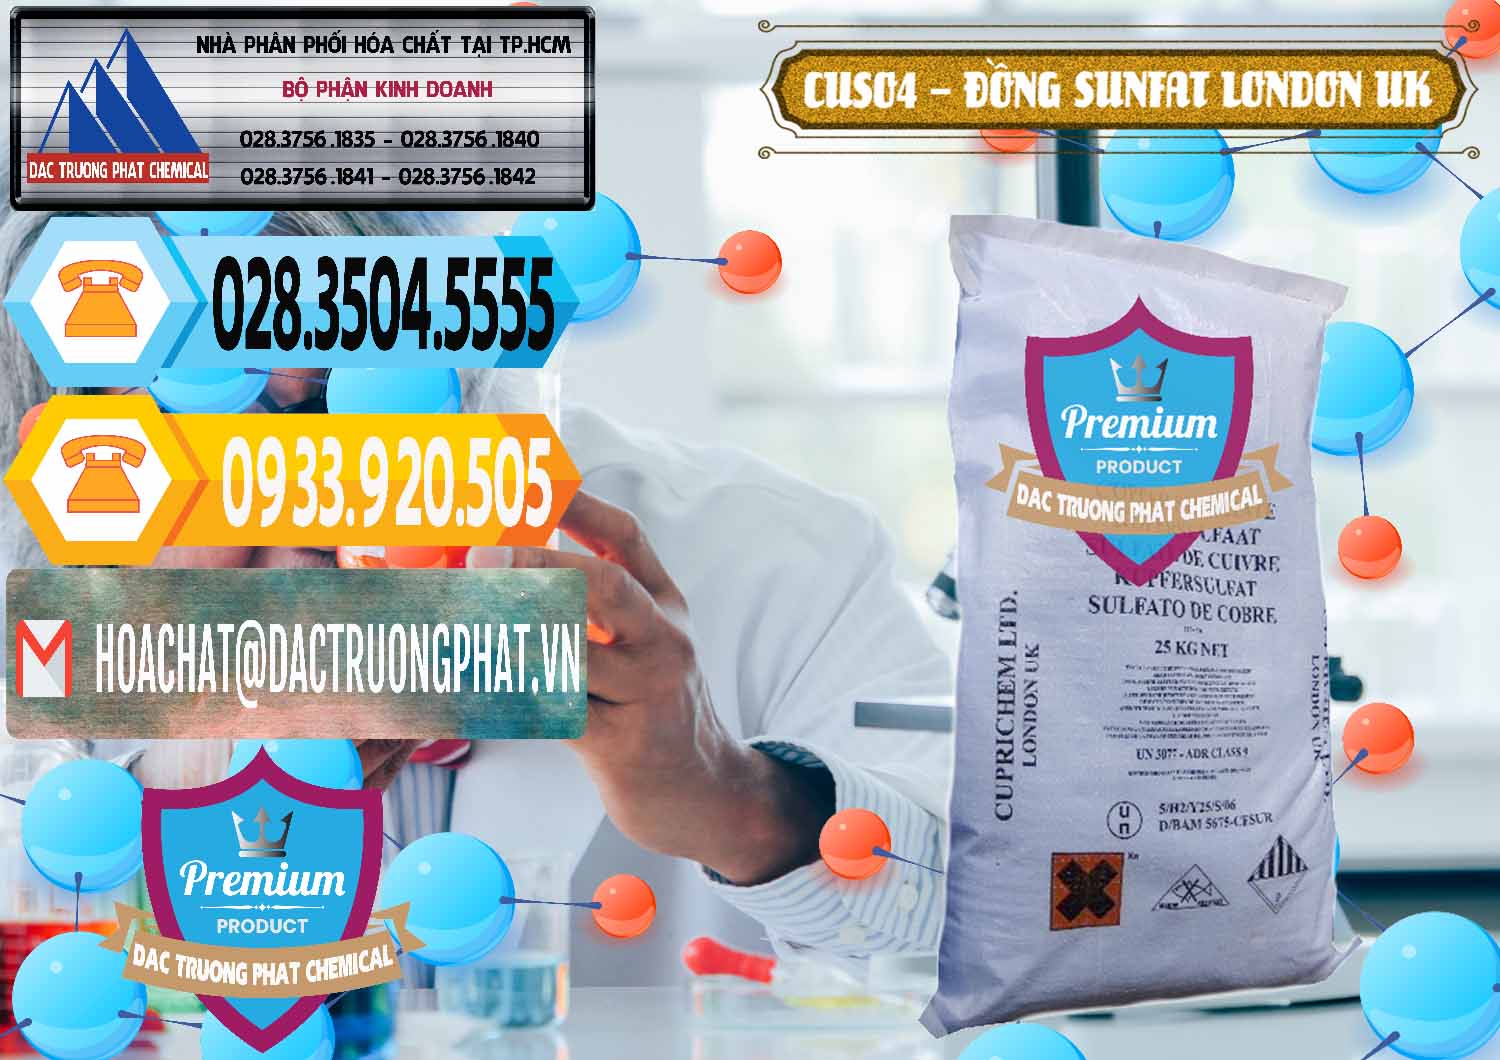 Kinh doanh và bán CuSO4 – Đồng Sunfat Anh Uk Kingdoms - 0478 - Cty phân phối & cung ứng hóa chất tại TP.HCM - hoachattayrua.net